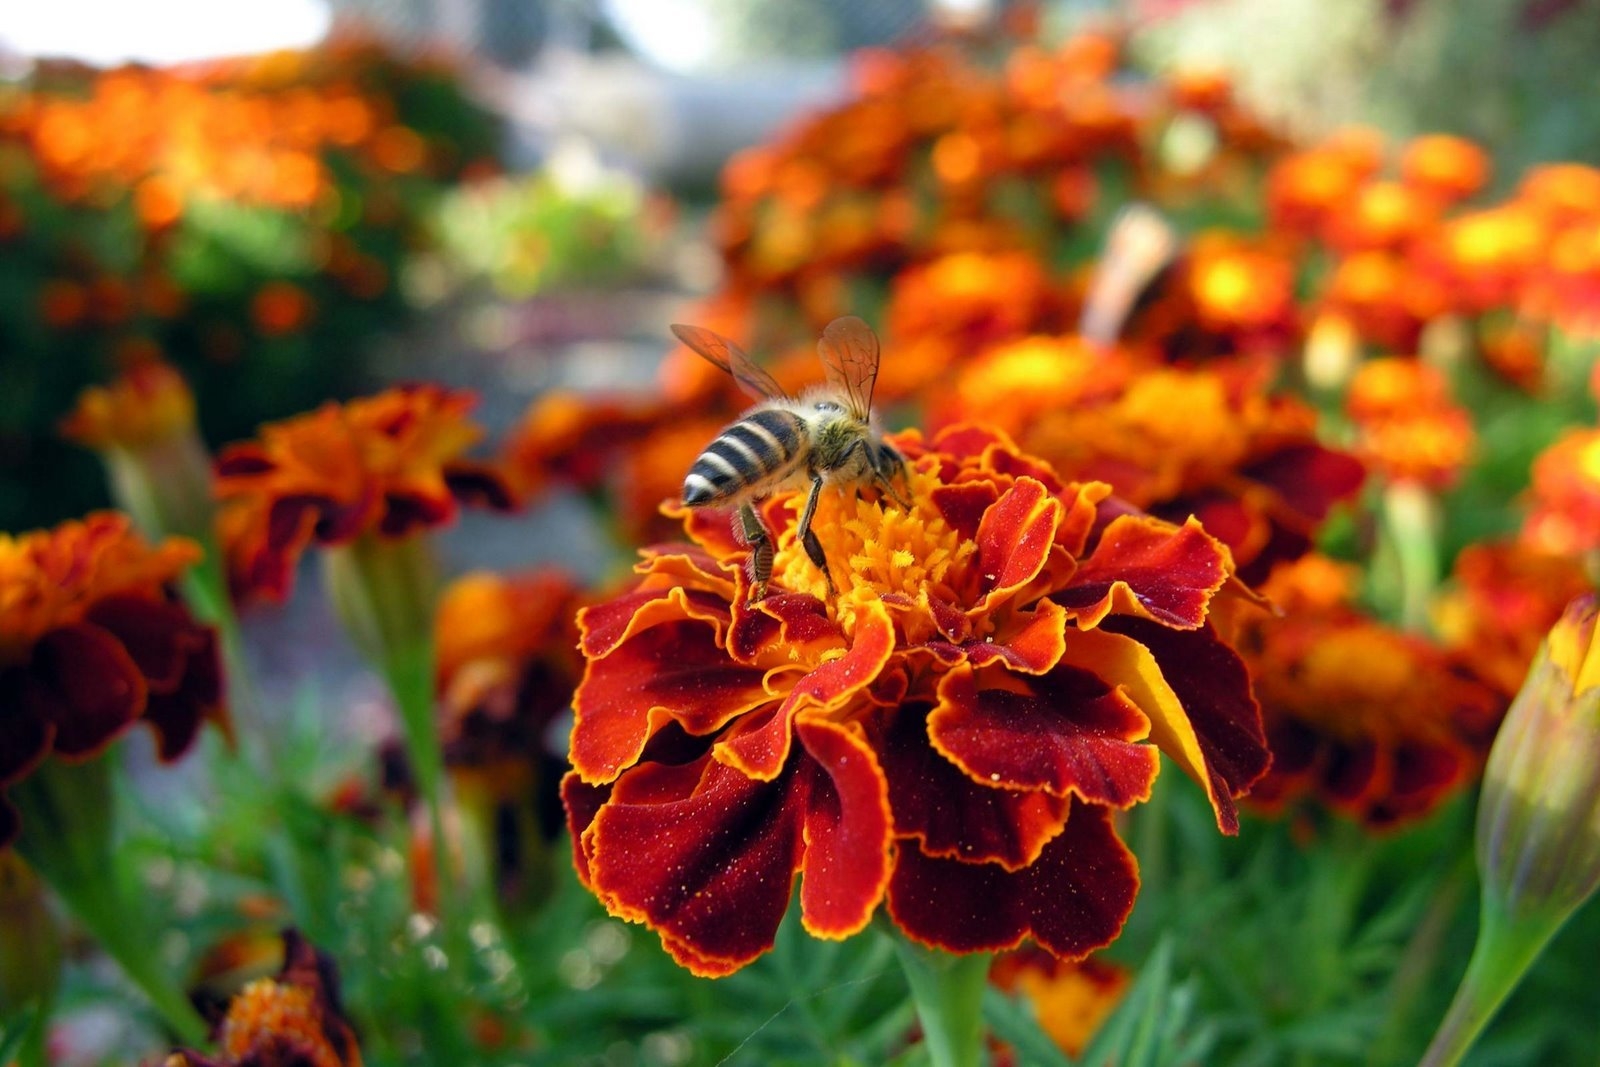 151292 Заставки і шпалери Поляна на телефон. Завантажити квітка, комаха, бджола, макро картинки безкоштовно